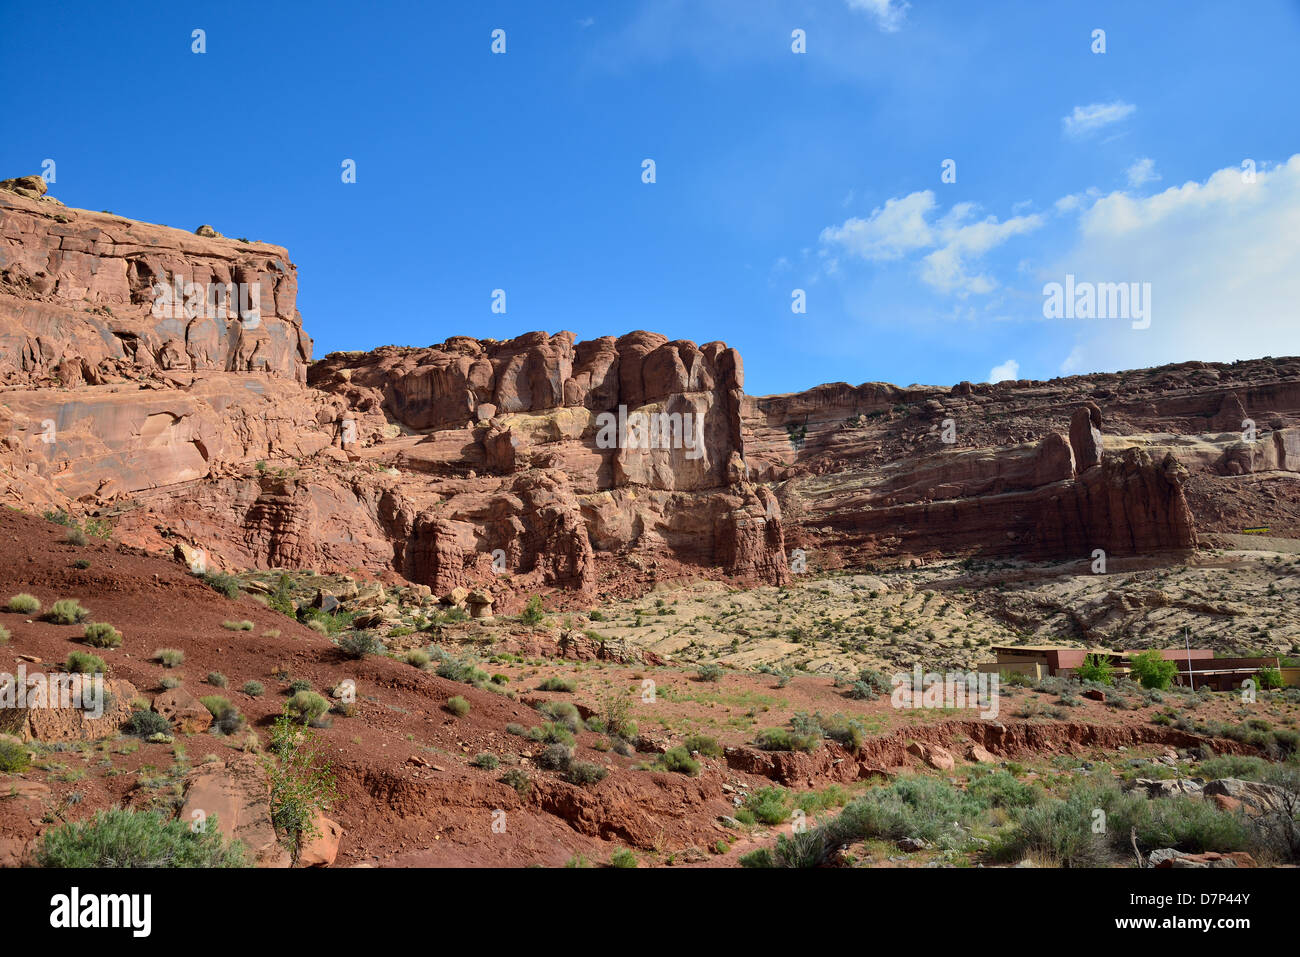 Centro Visitatori del Parco Nazionale di Arches in pietra arenaria rossa cliff. Moab, Utah, Stati Uniti d'America. Foto Stock